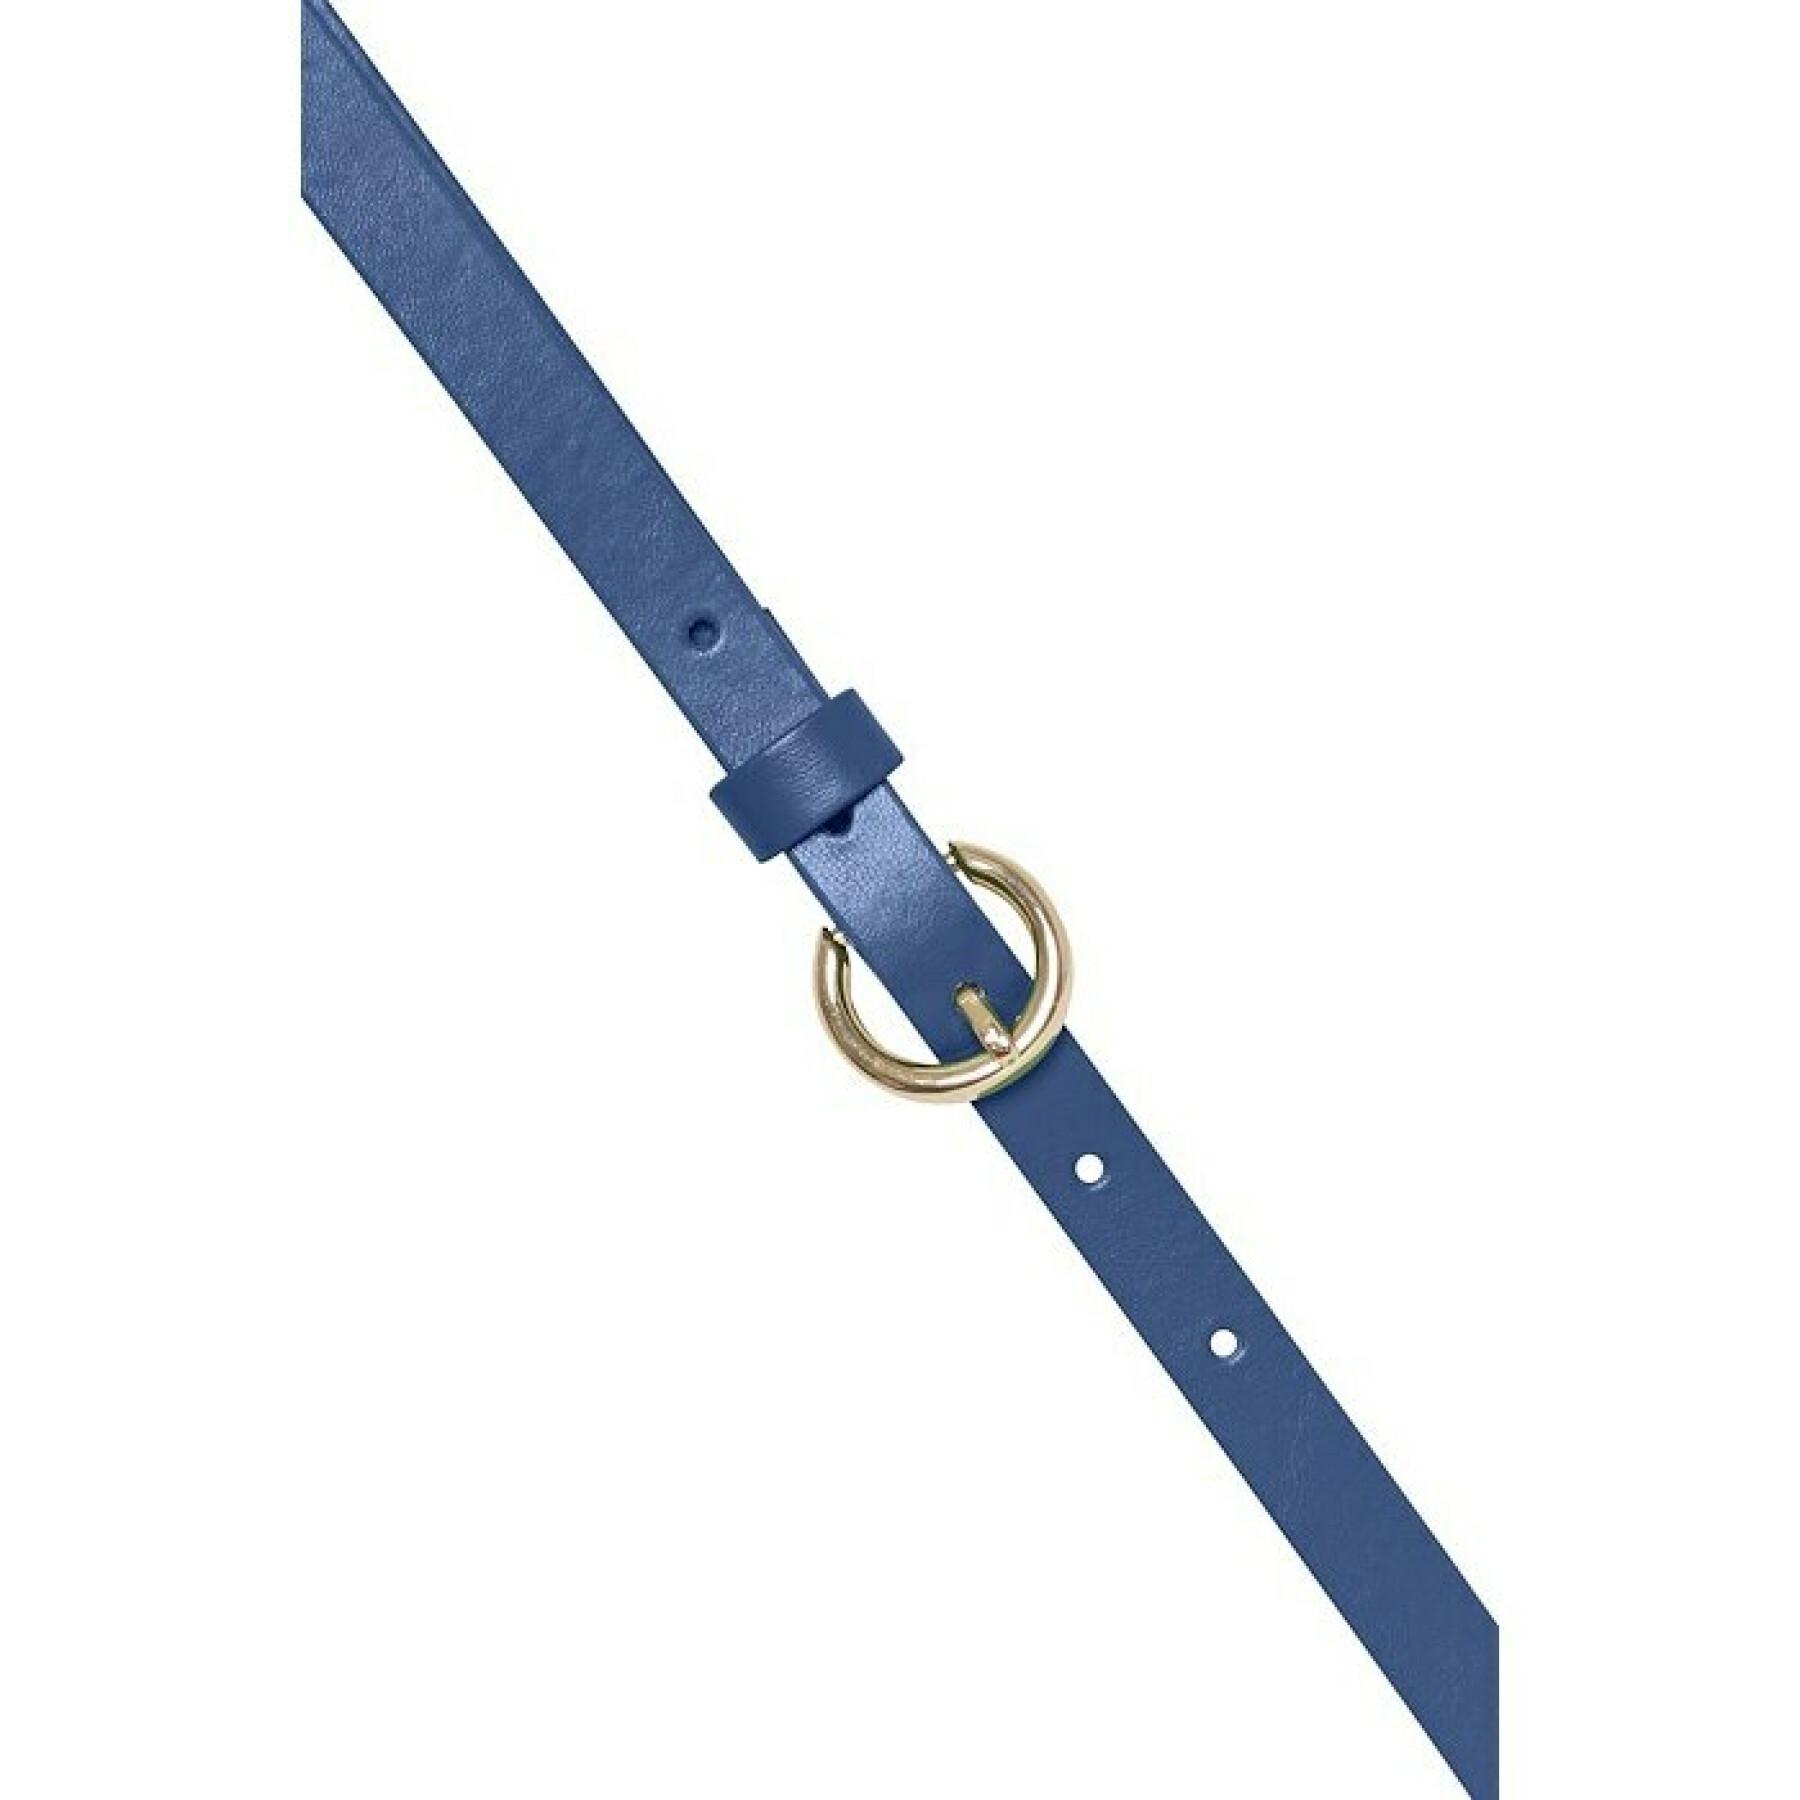 Women's belt Ichi Accessories Iacalista